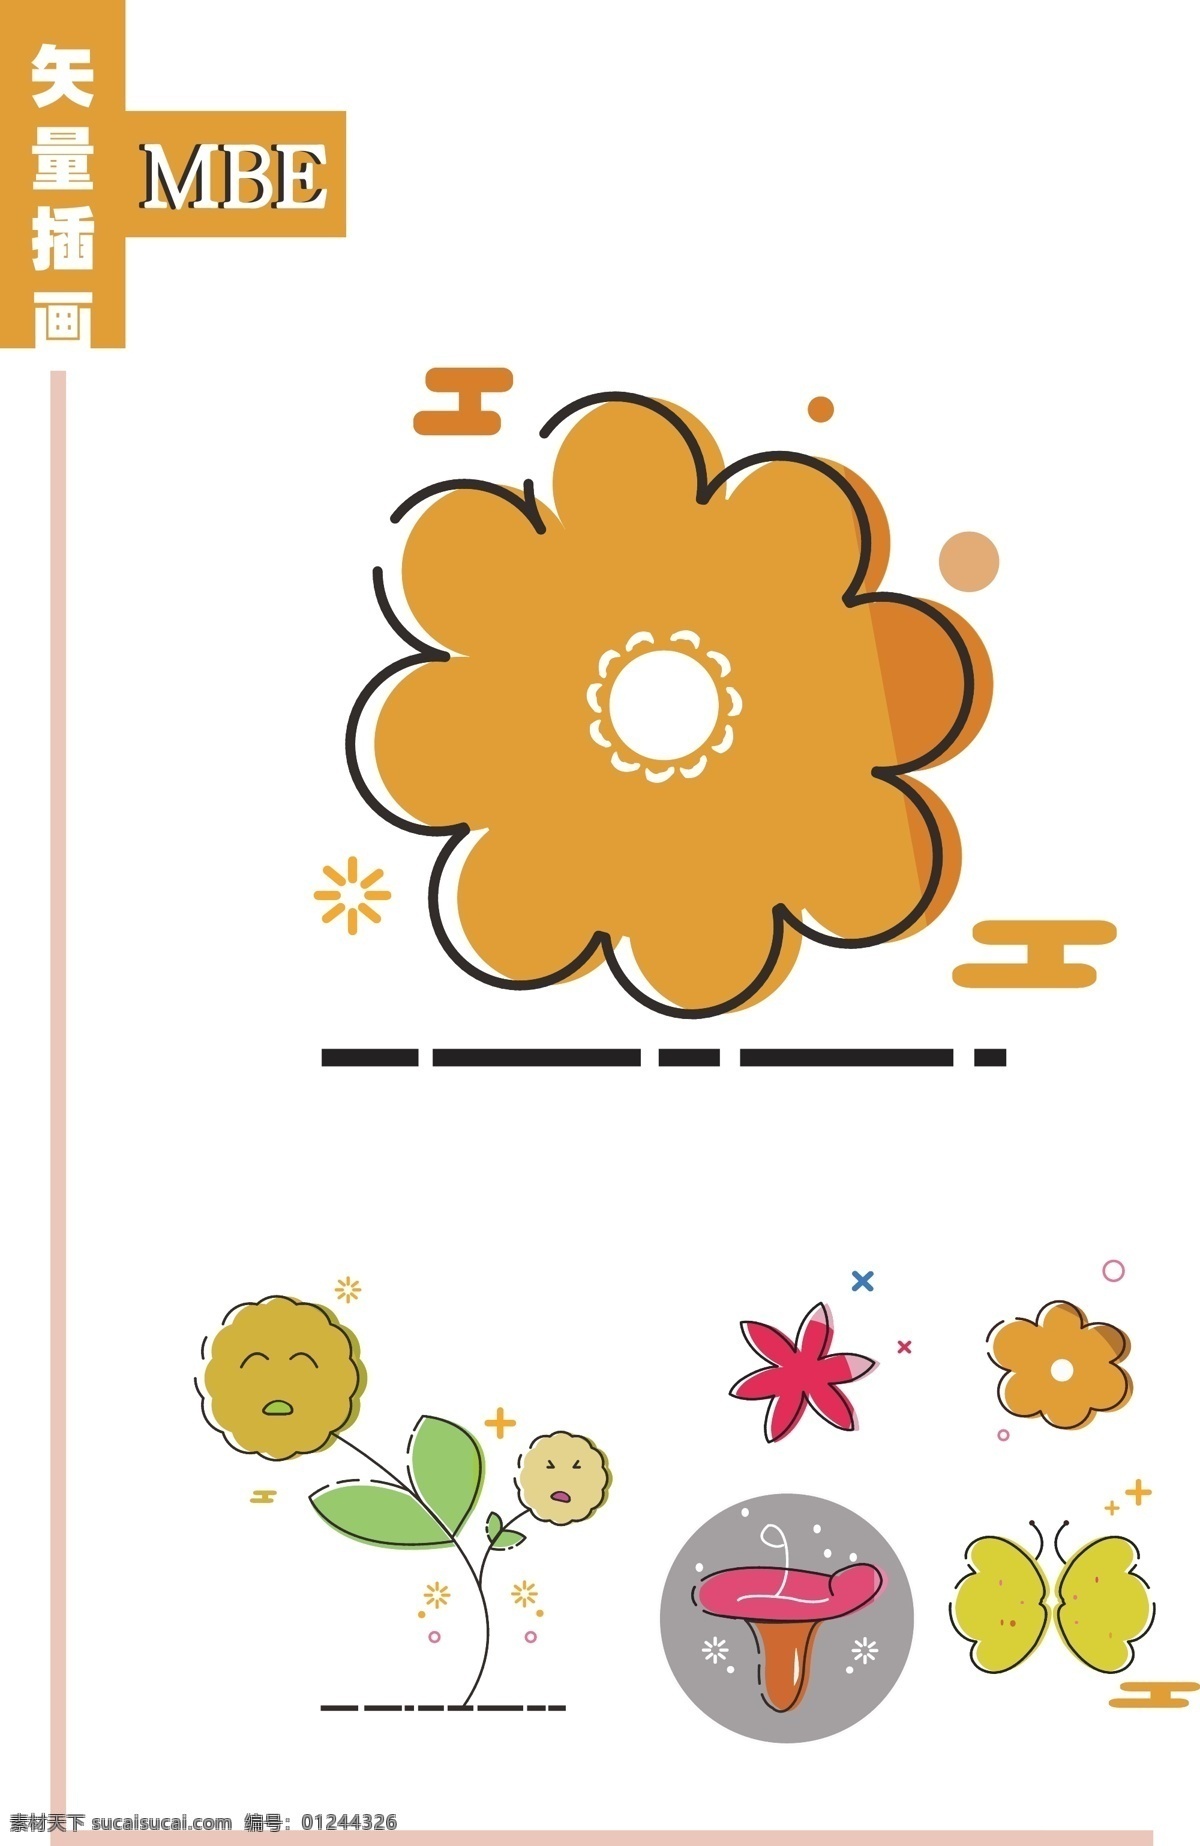 mbe 风格 插画 图标 卡通花朵 插画设计 花朵 花瓣 简约 有趣 广告装饰 ui设计